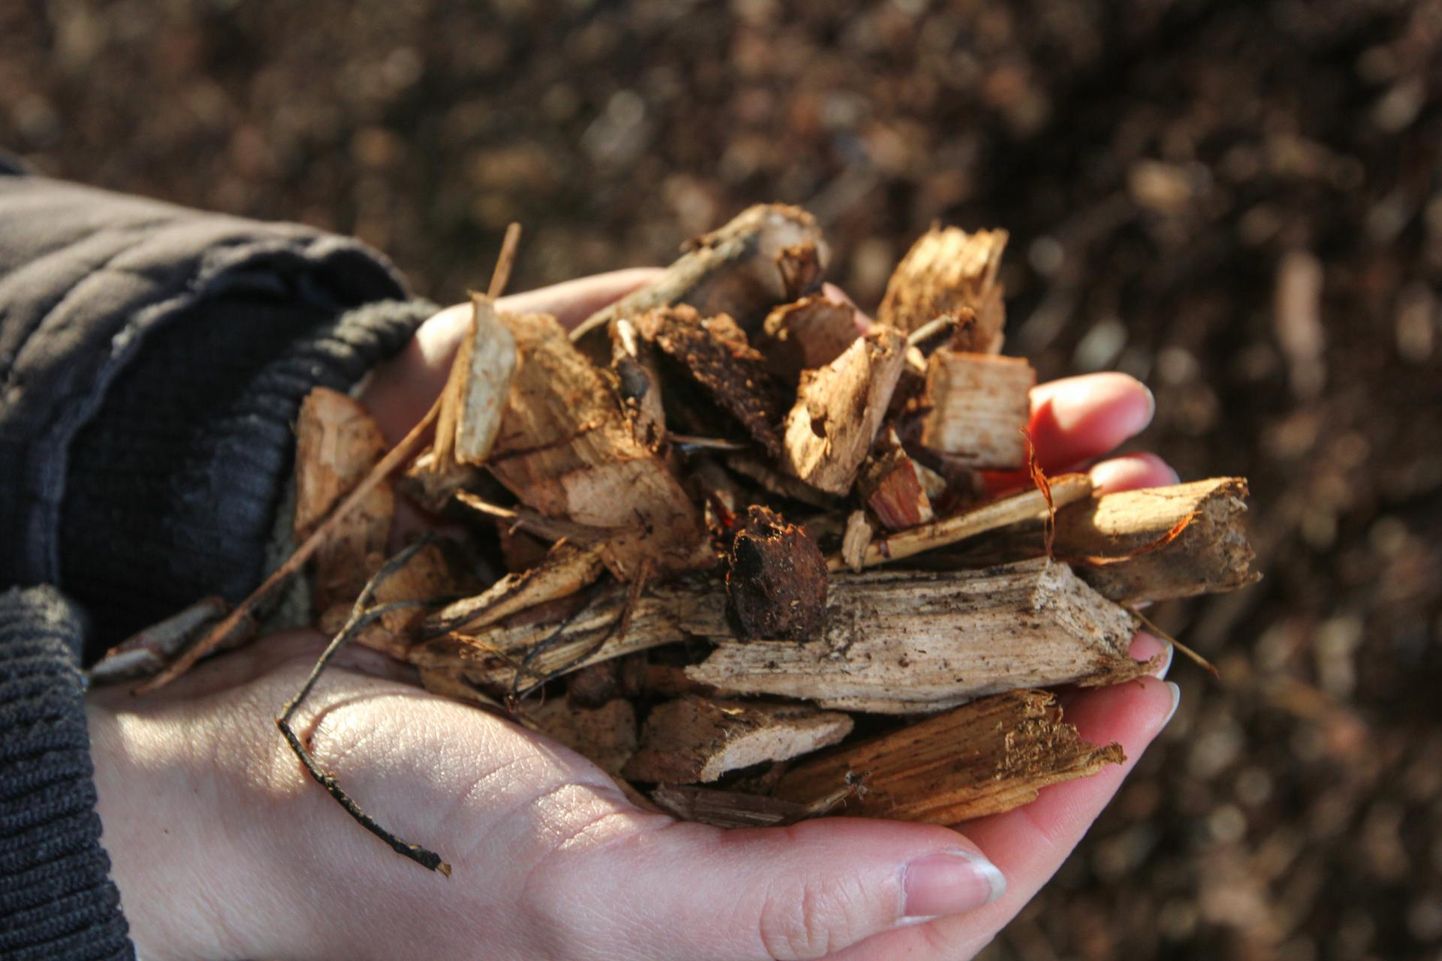 Неполные семь процентов древесной щепы производится при ведении хозяственной дейтельности центром управления государственными лесами Эстонии (RMK) .